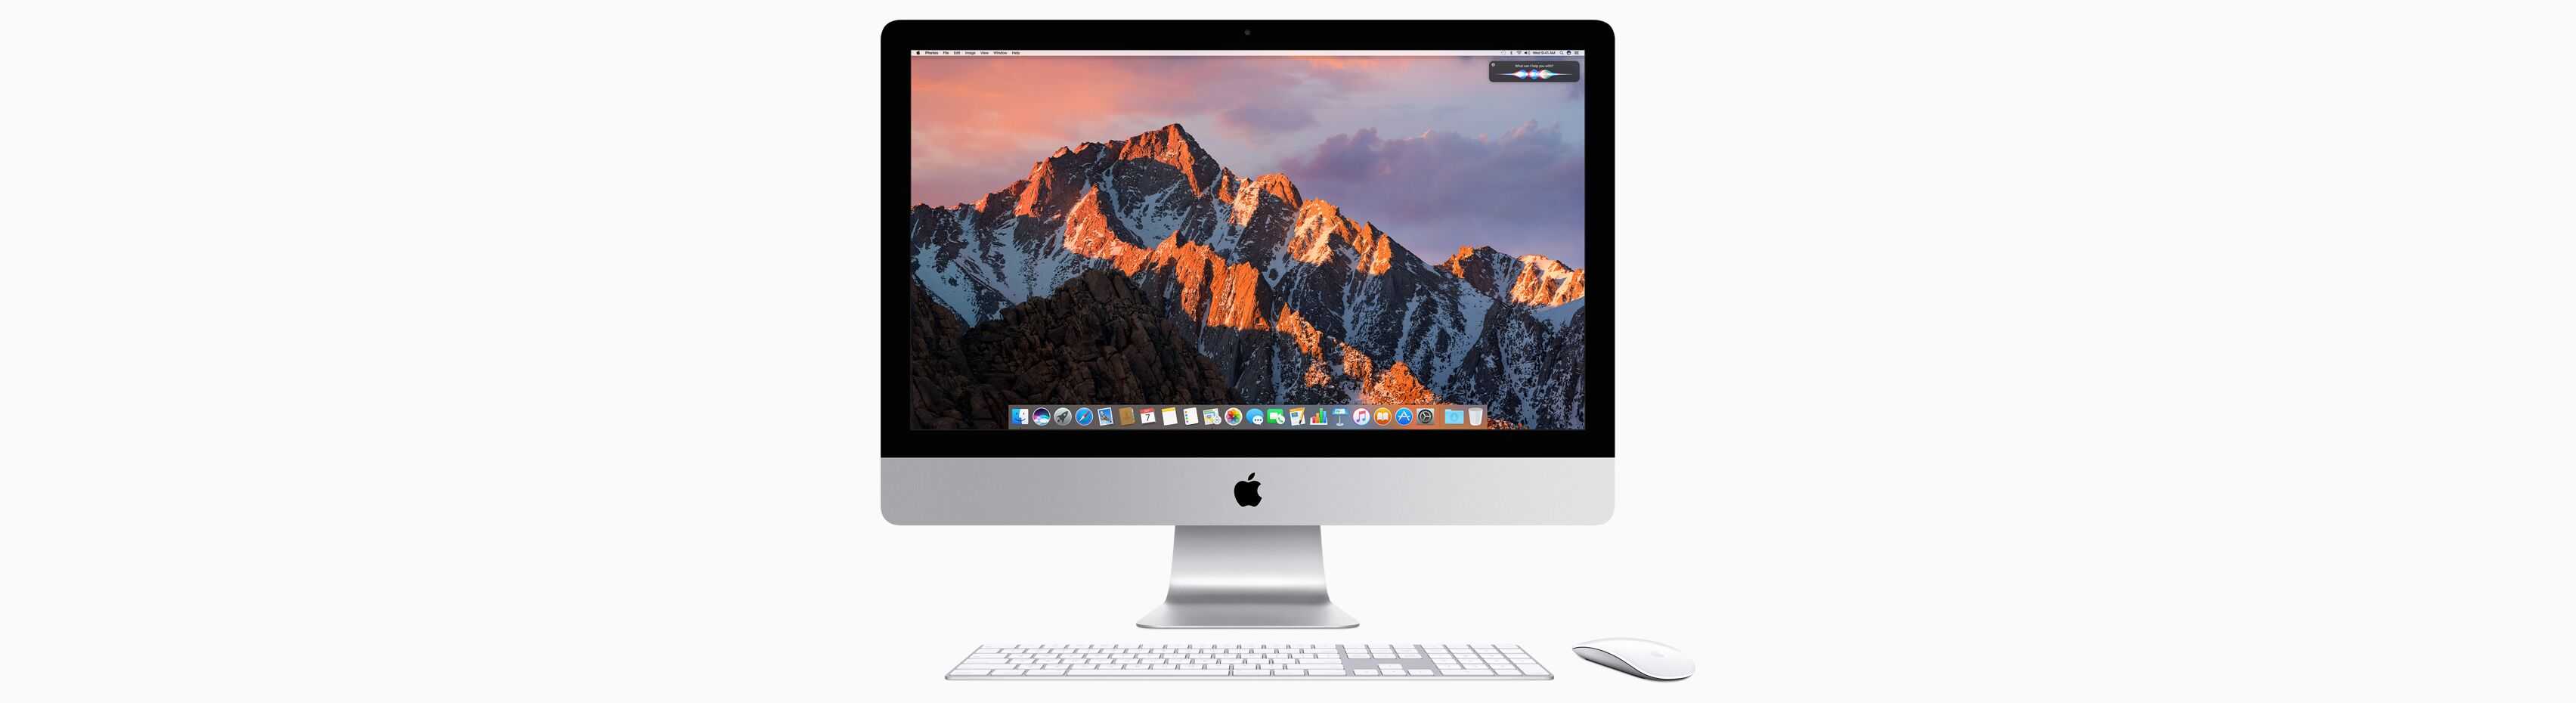 Macbook pro с процессором apple m1 или intel: какой выбрать?